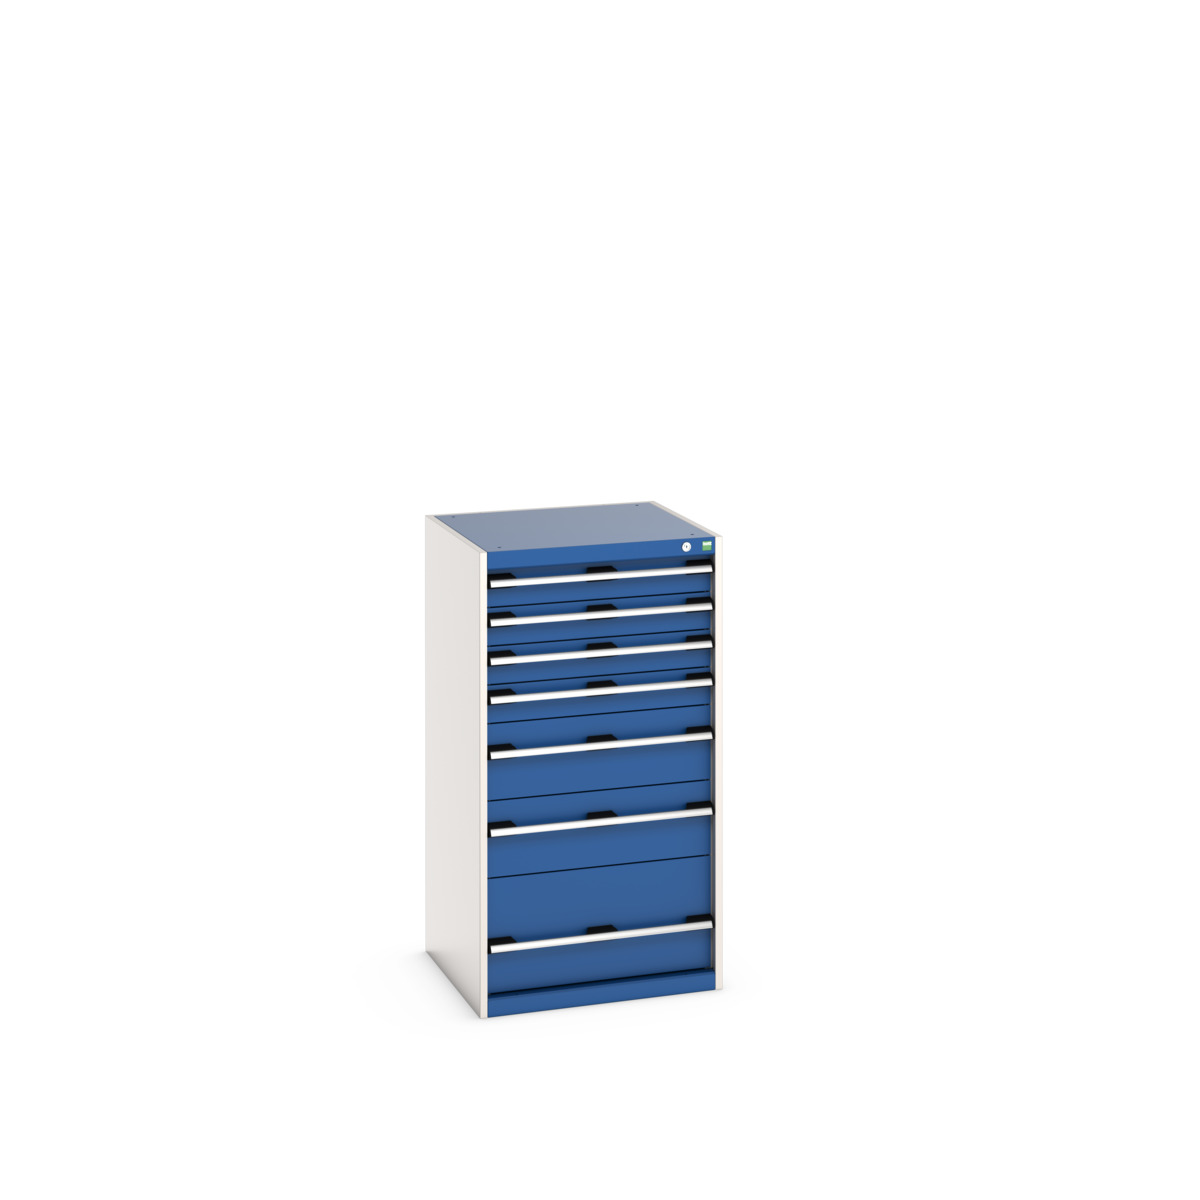 40019069.11V - cubio drawer cabinet